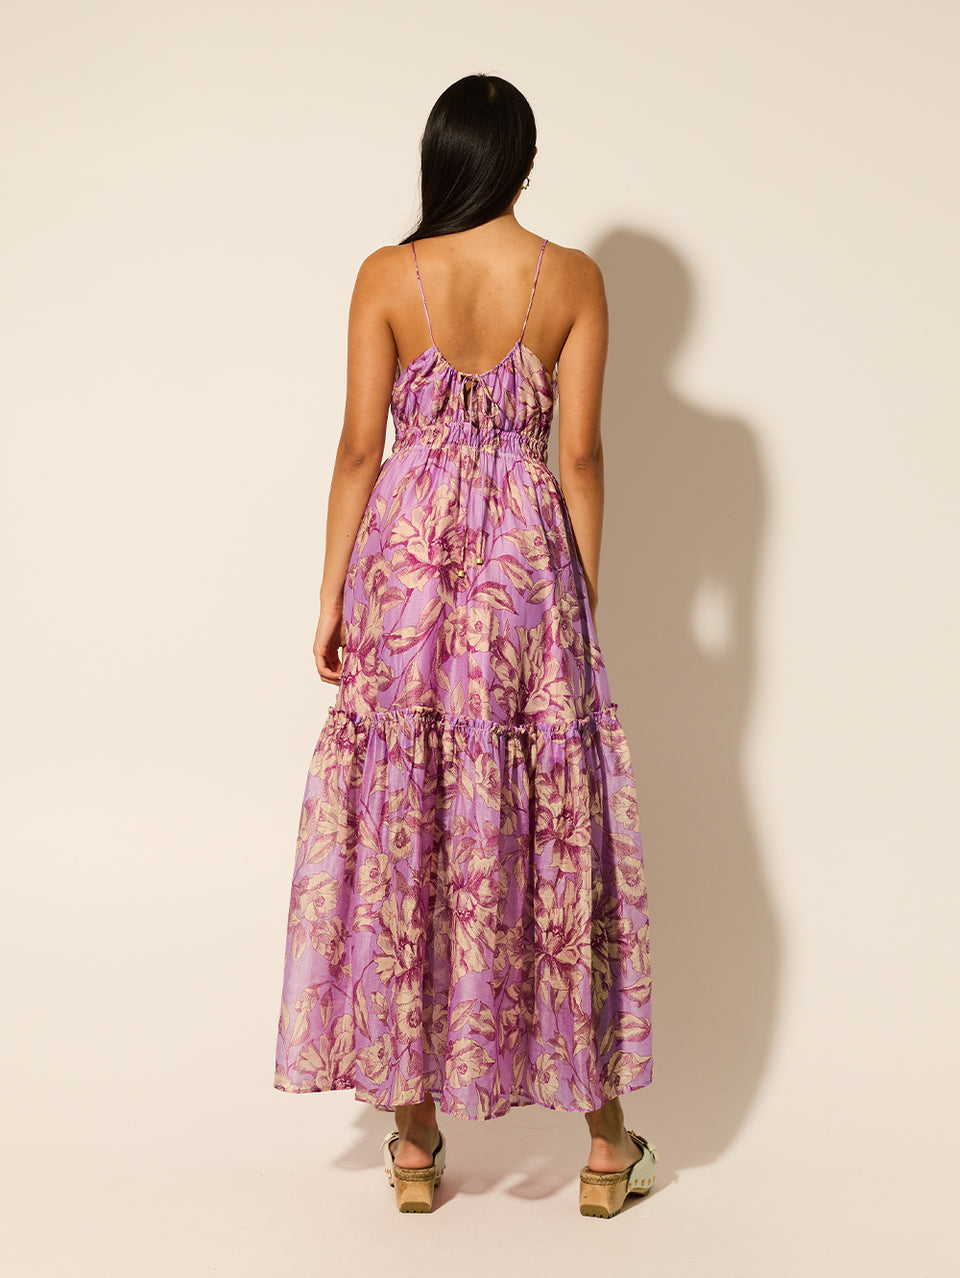 Reyna Maxi Dress KIVARI | Model wears purple floral maxi dress back view